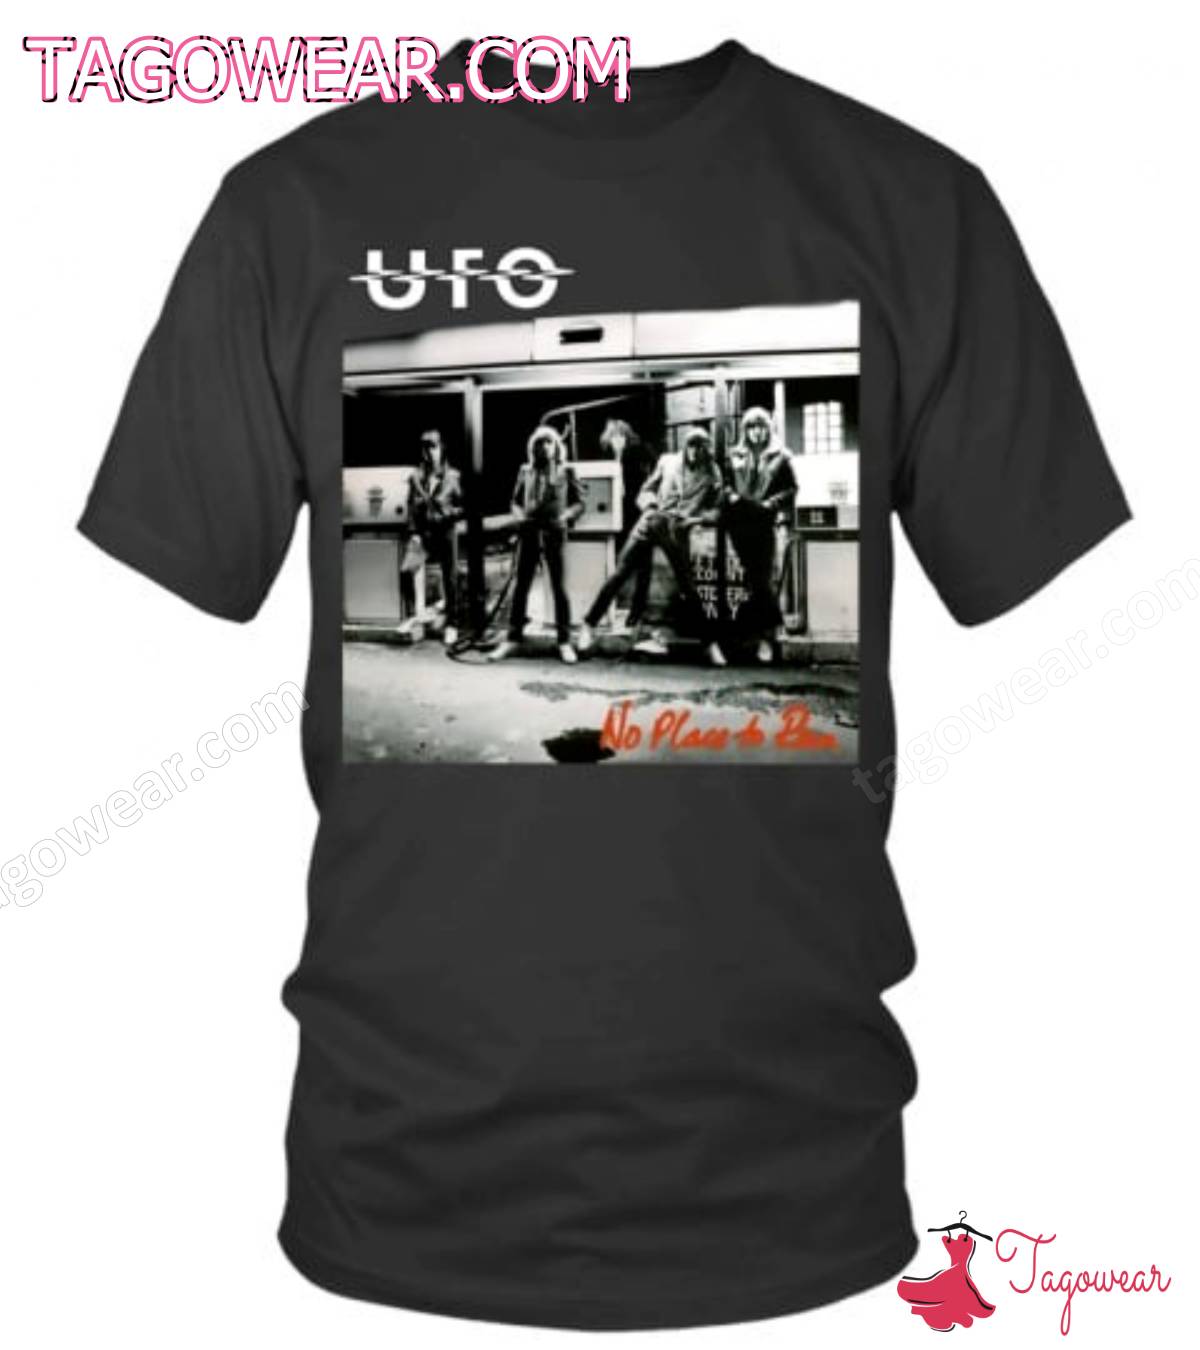 Ufo No Place To Run Album Cover Shirt